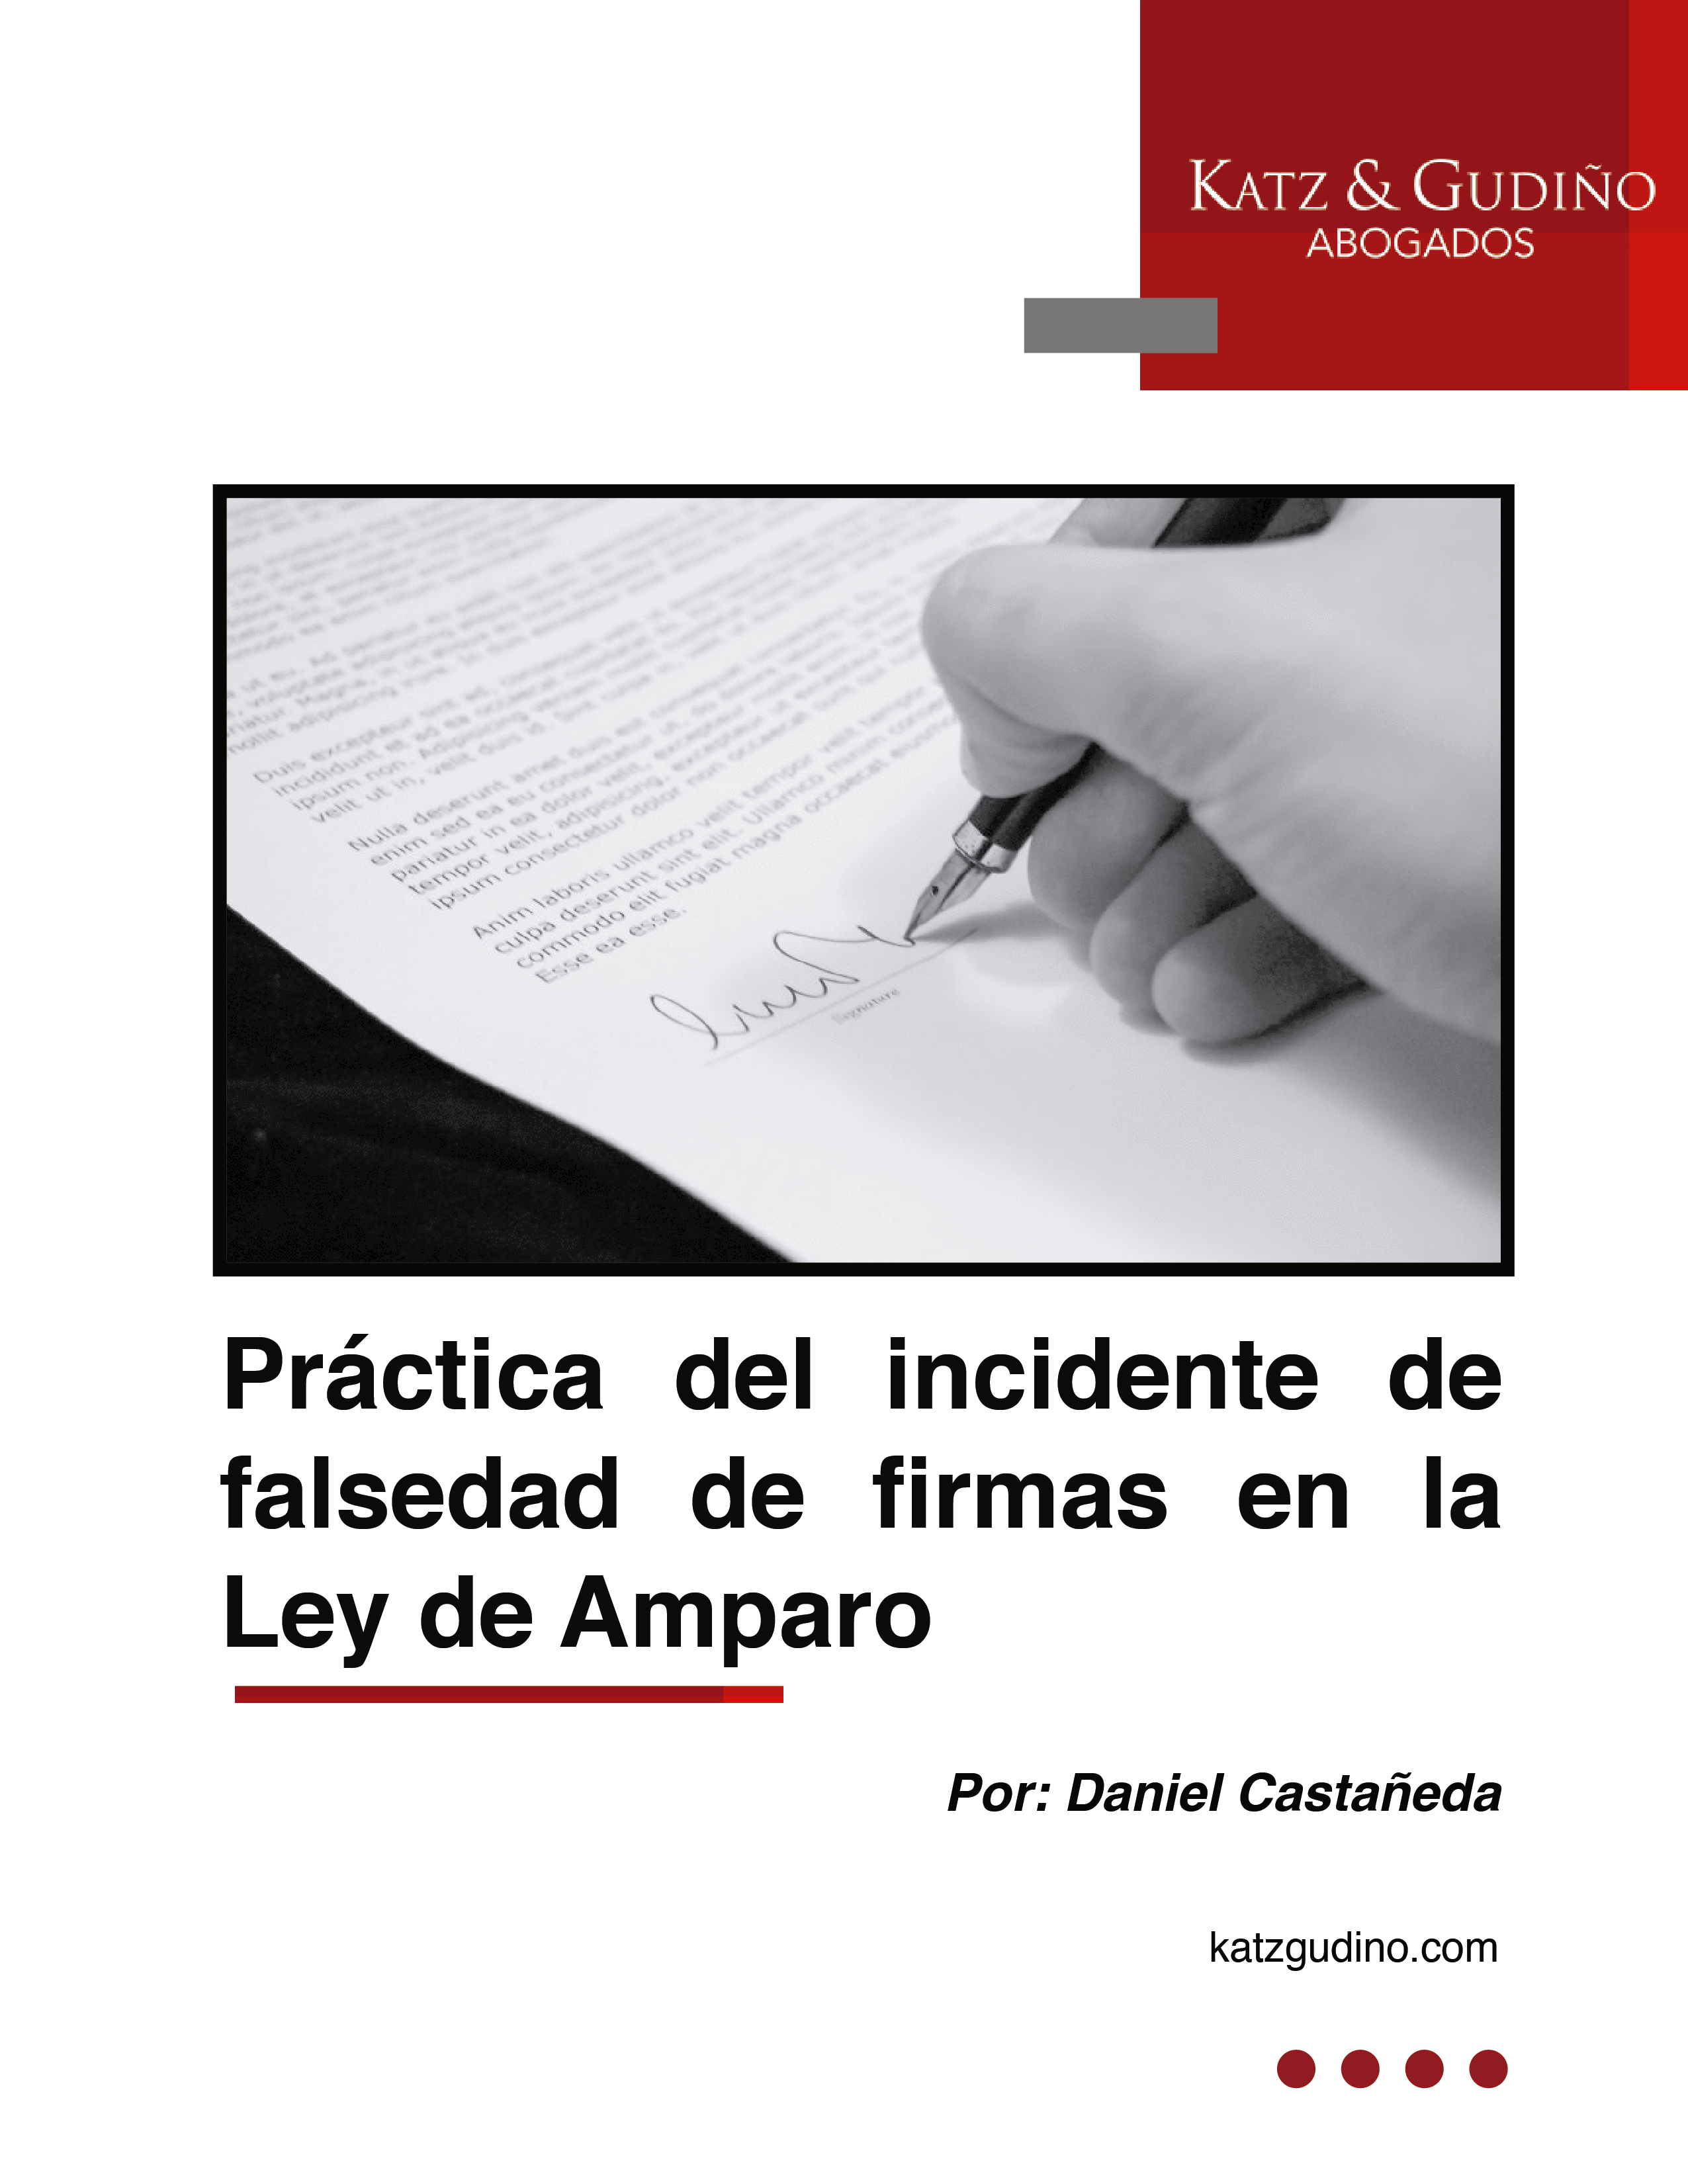 Práctica del incidente de falsedad de firmas en la Ley de Amparo.